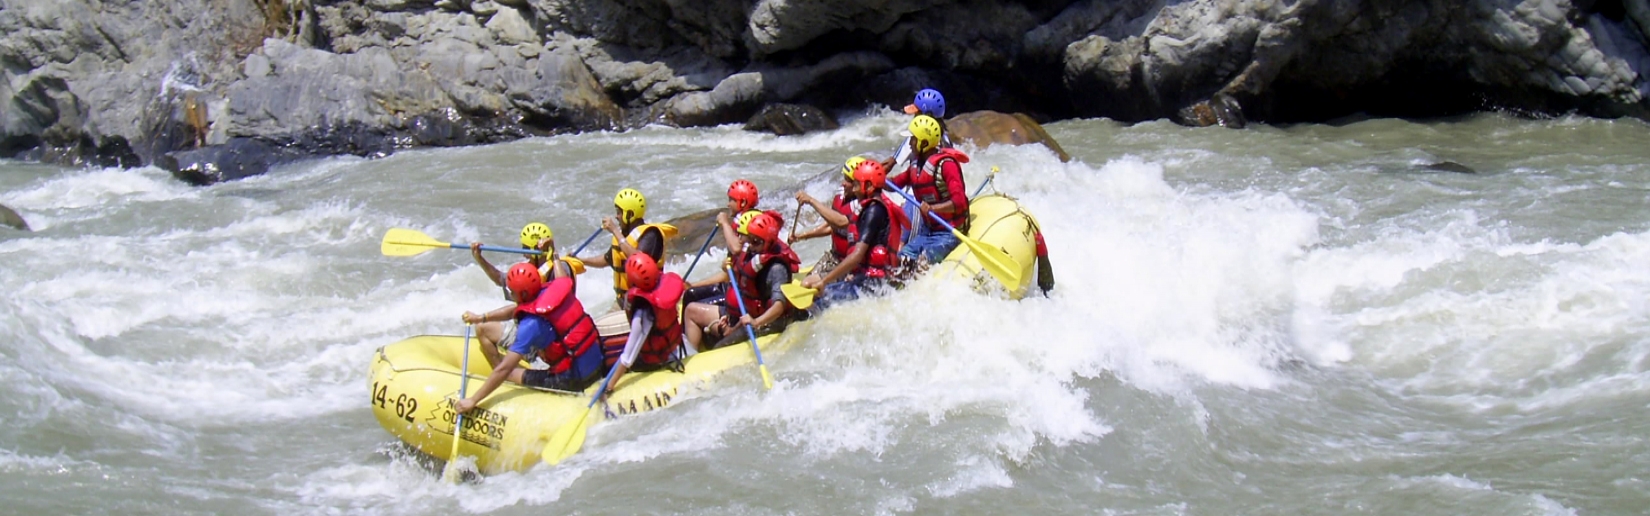 River <span>Rafting</span> in Nepal